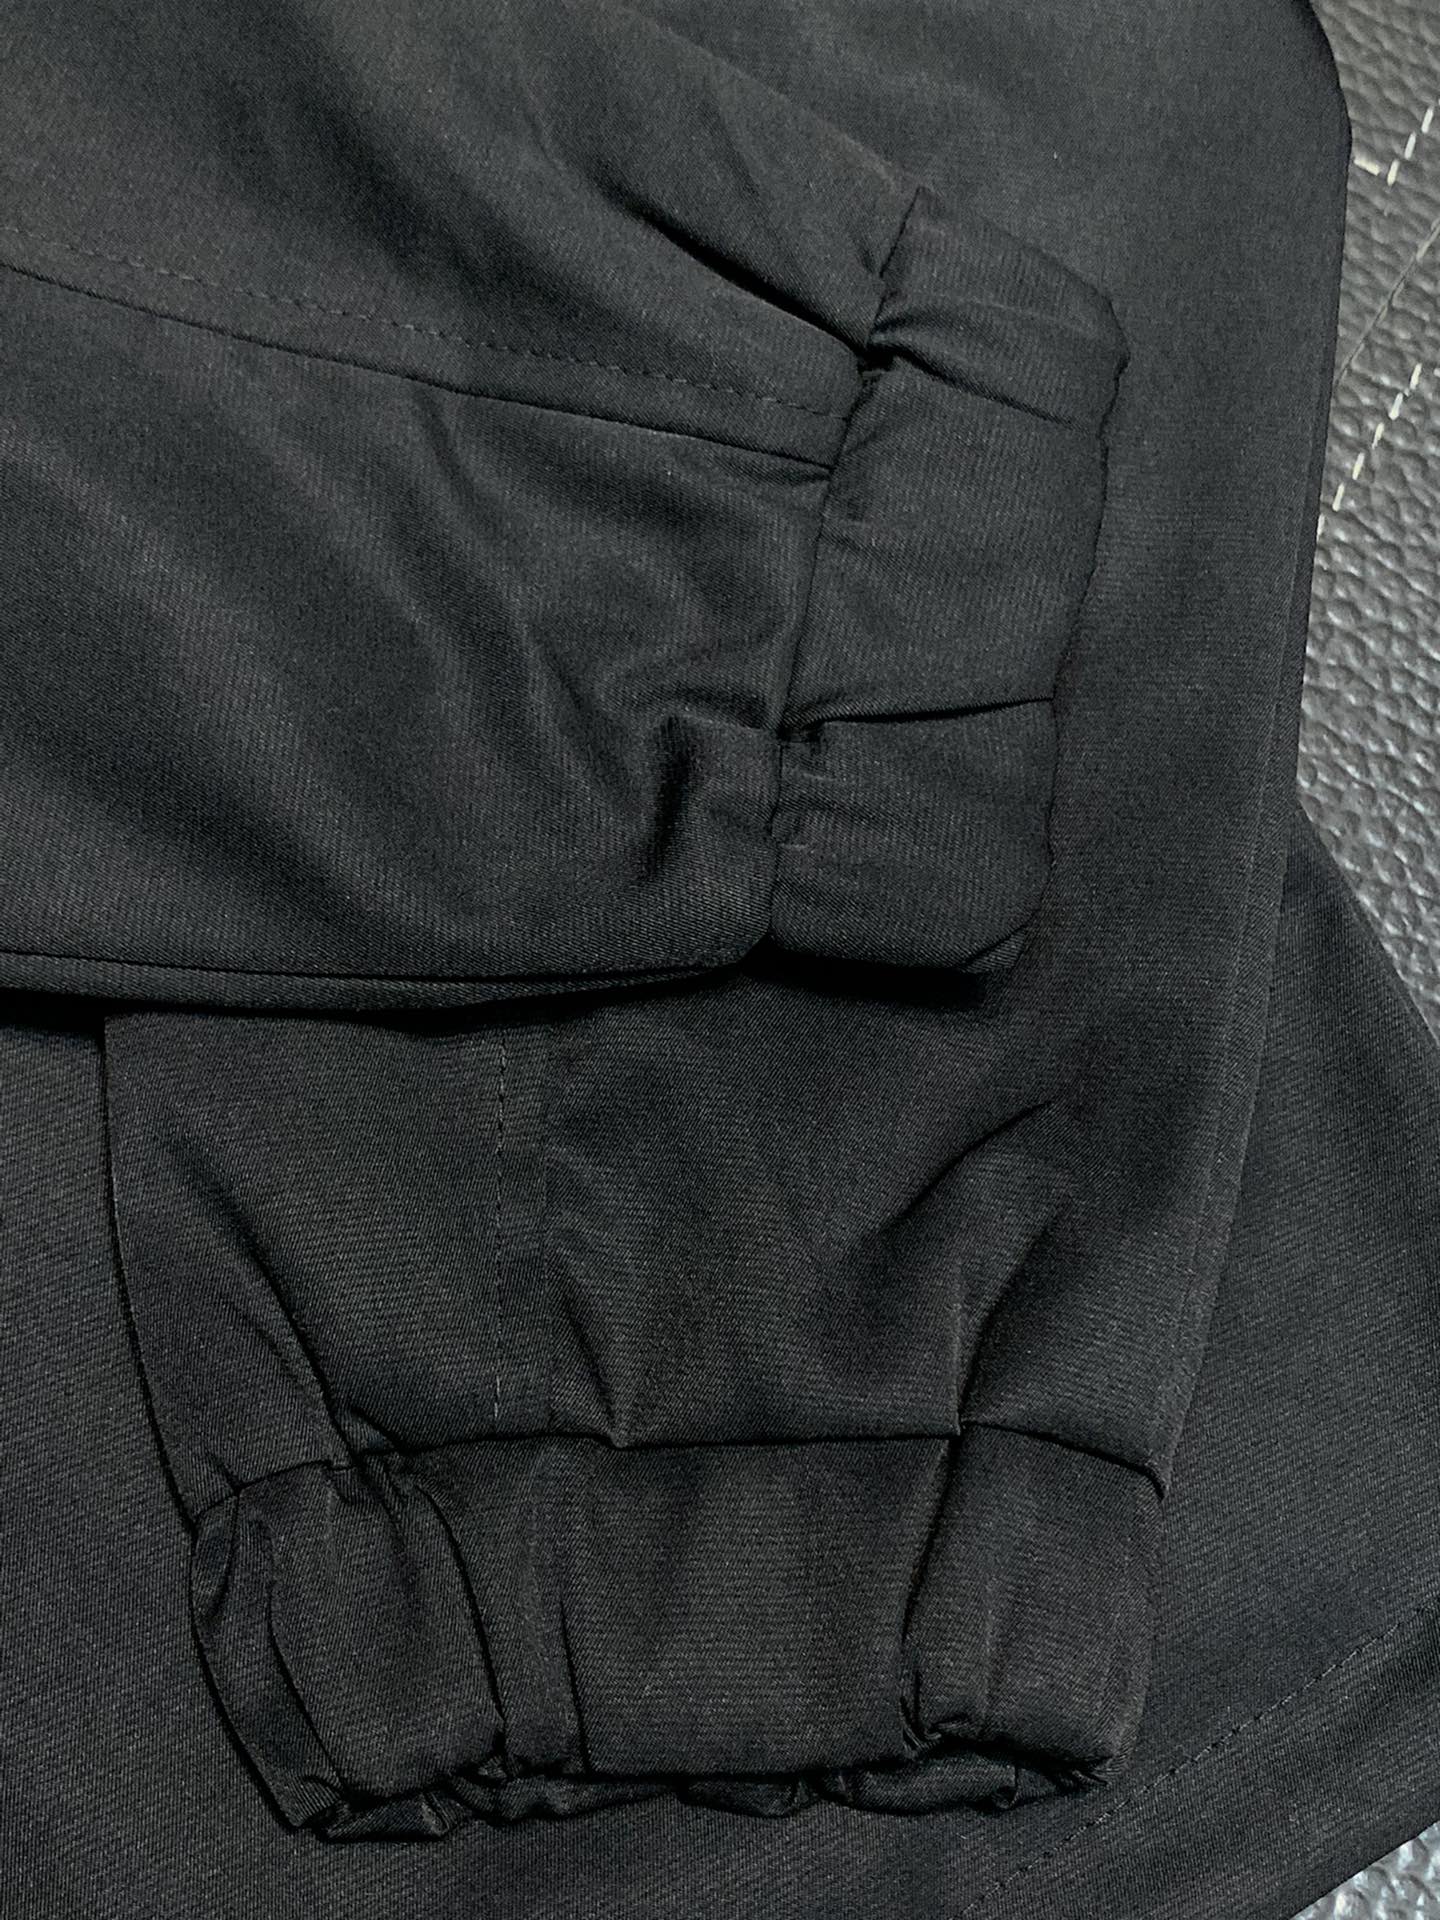 LV路易威登独家专供最新春秋时尚立领夹克经典设计感与颜值爆棚的外套品质更是无法挑剔品控可以直接入手不容过